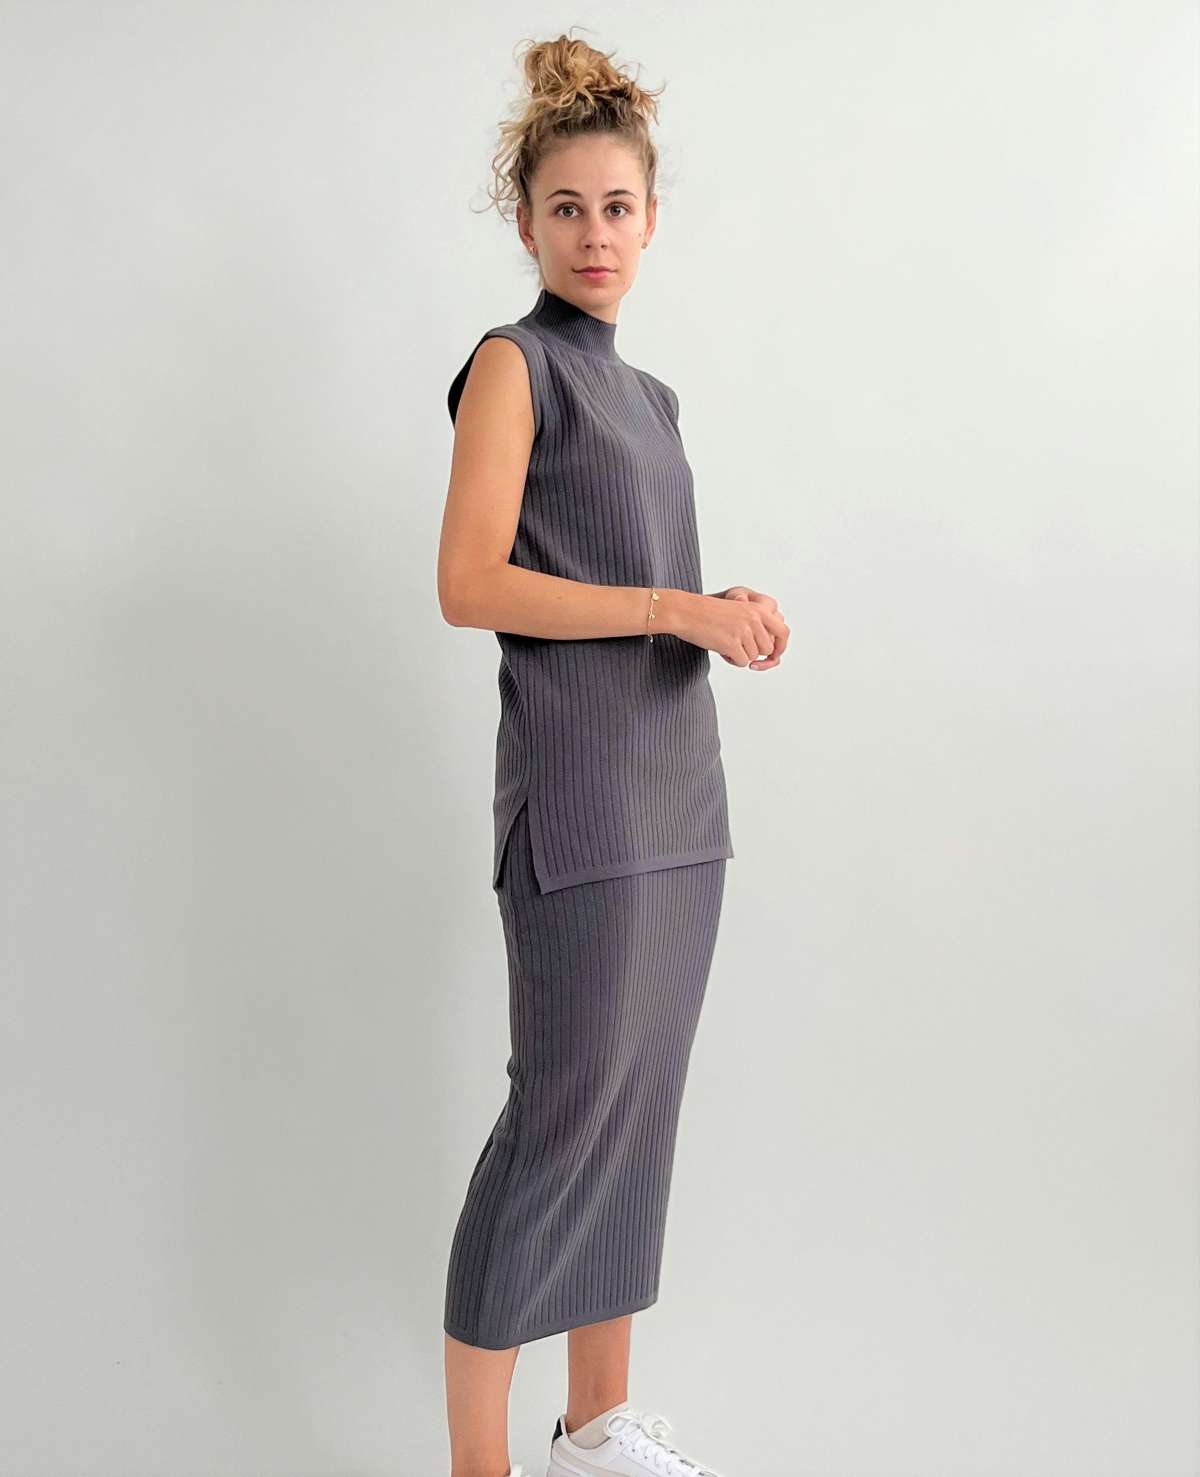 Трикотажная юбка рубчатой вязки с эластичным поясом из вискозы стрейч.